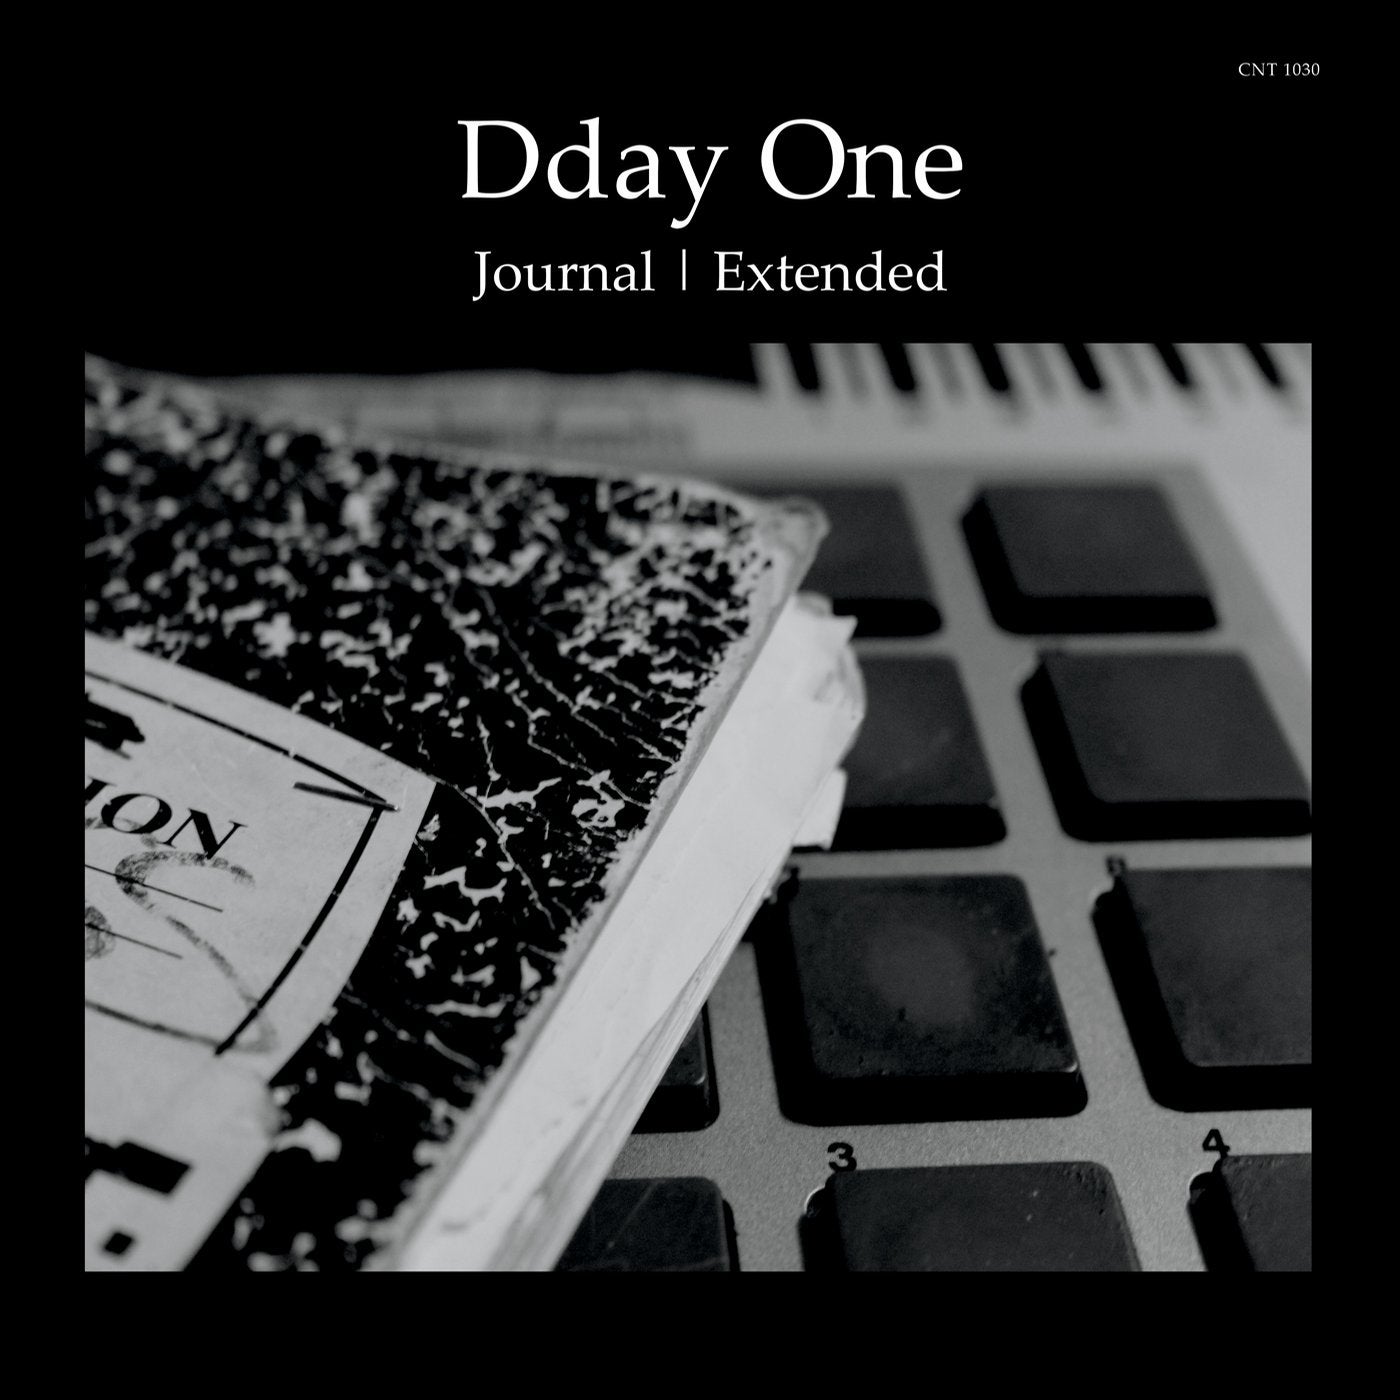 Journal | Extended